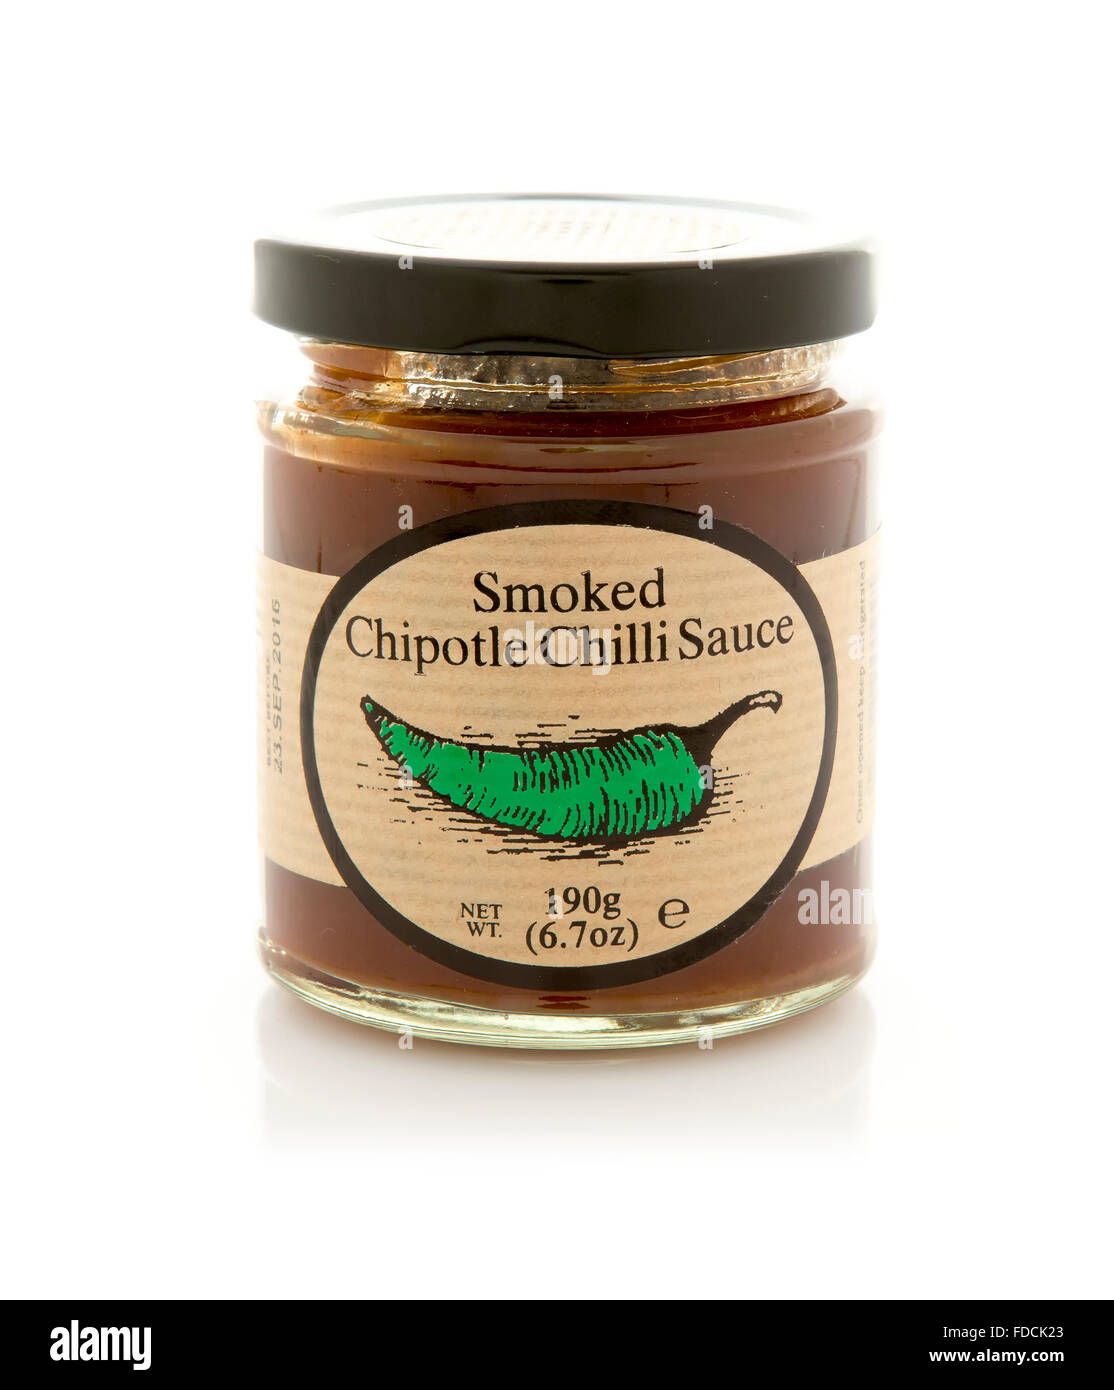 Edinburgh bewahrt geräucherter Chipotle Chili-Sauce auf weißem Hintergrund Stockfoto